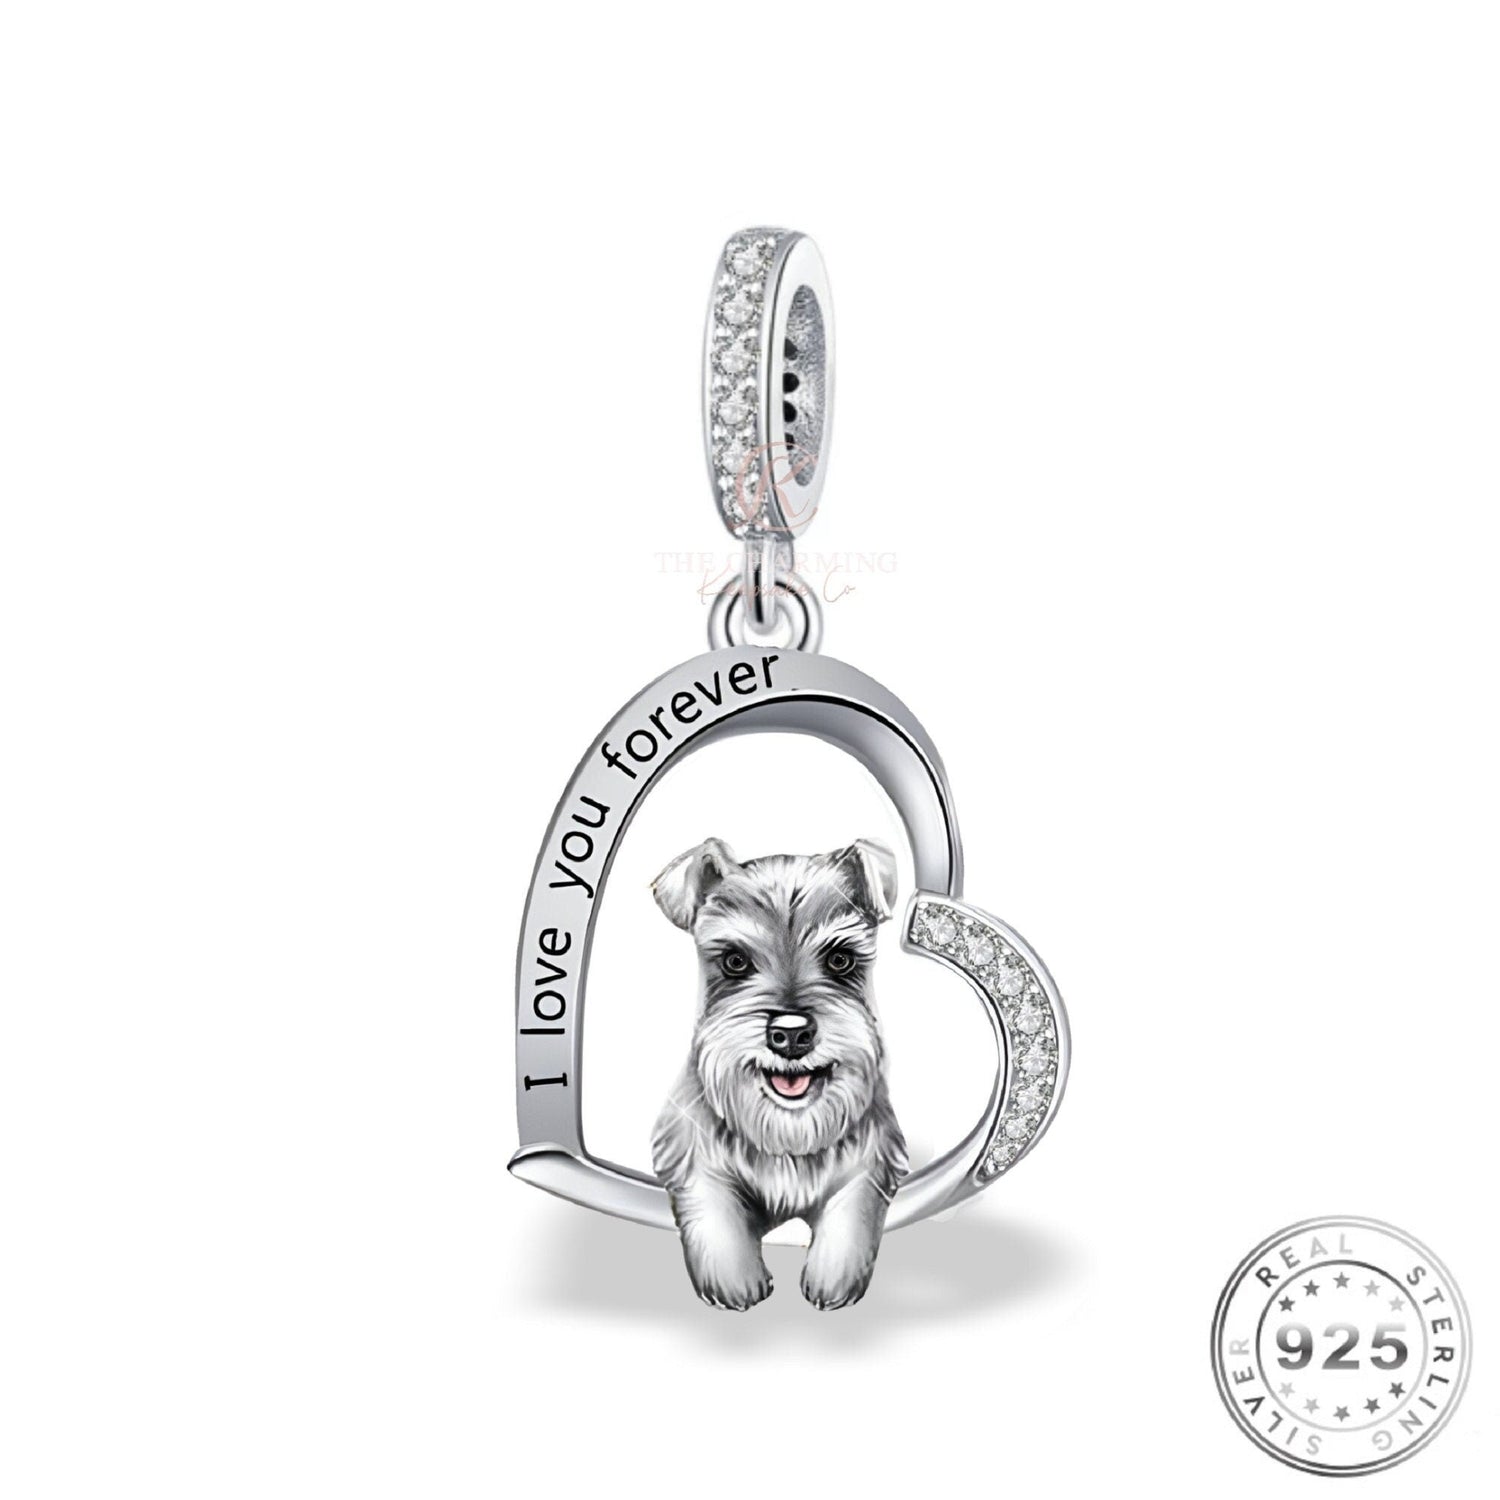 Schnauzer Dog Charm 925 Sterling Silver & Rose Gold fits pandora bracelets 